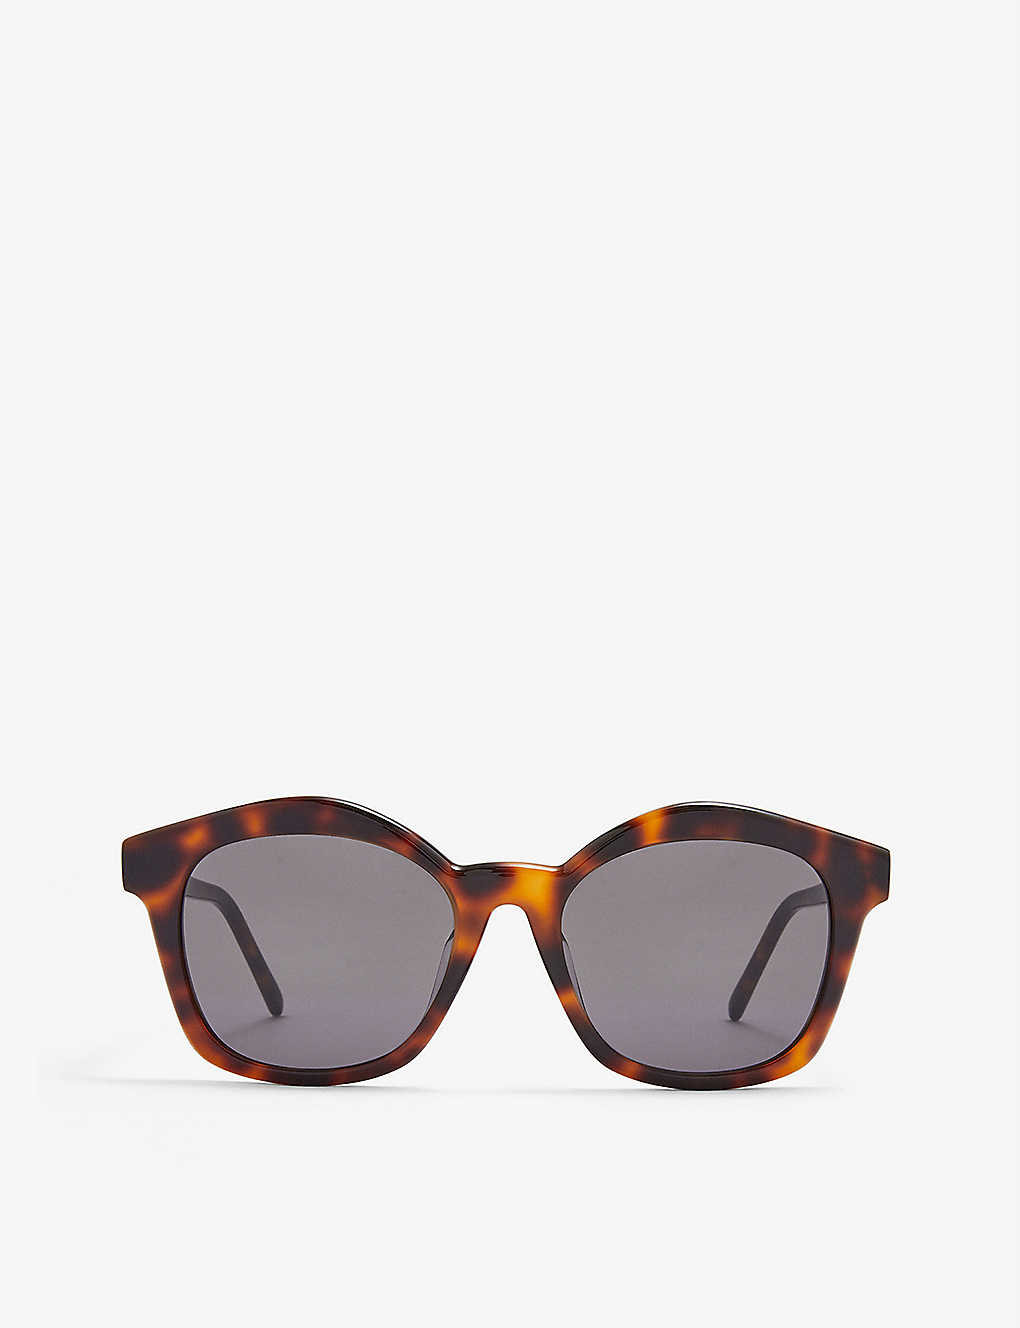 G832270X04 tortoiseshell-design acetate sunglasses(9464070)